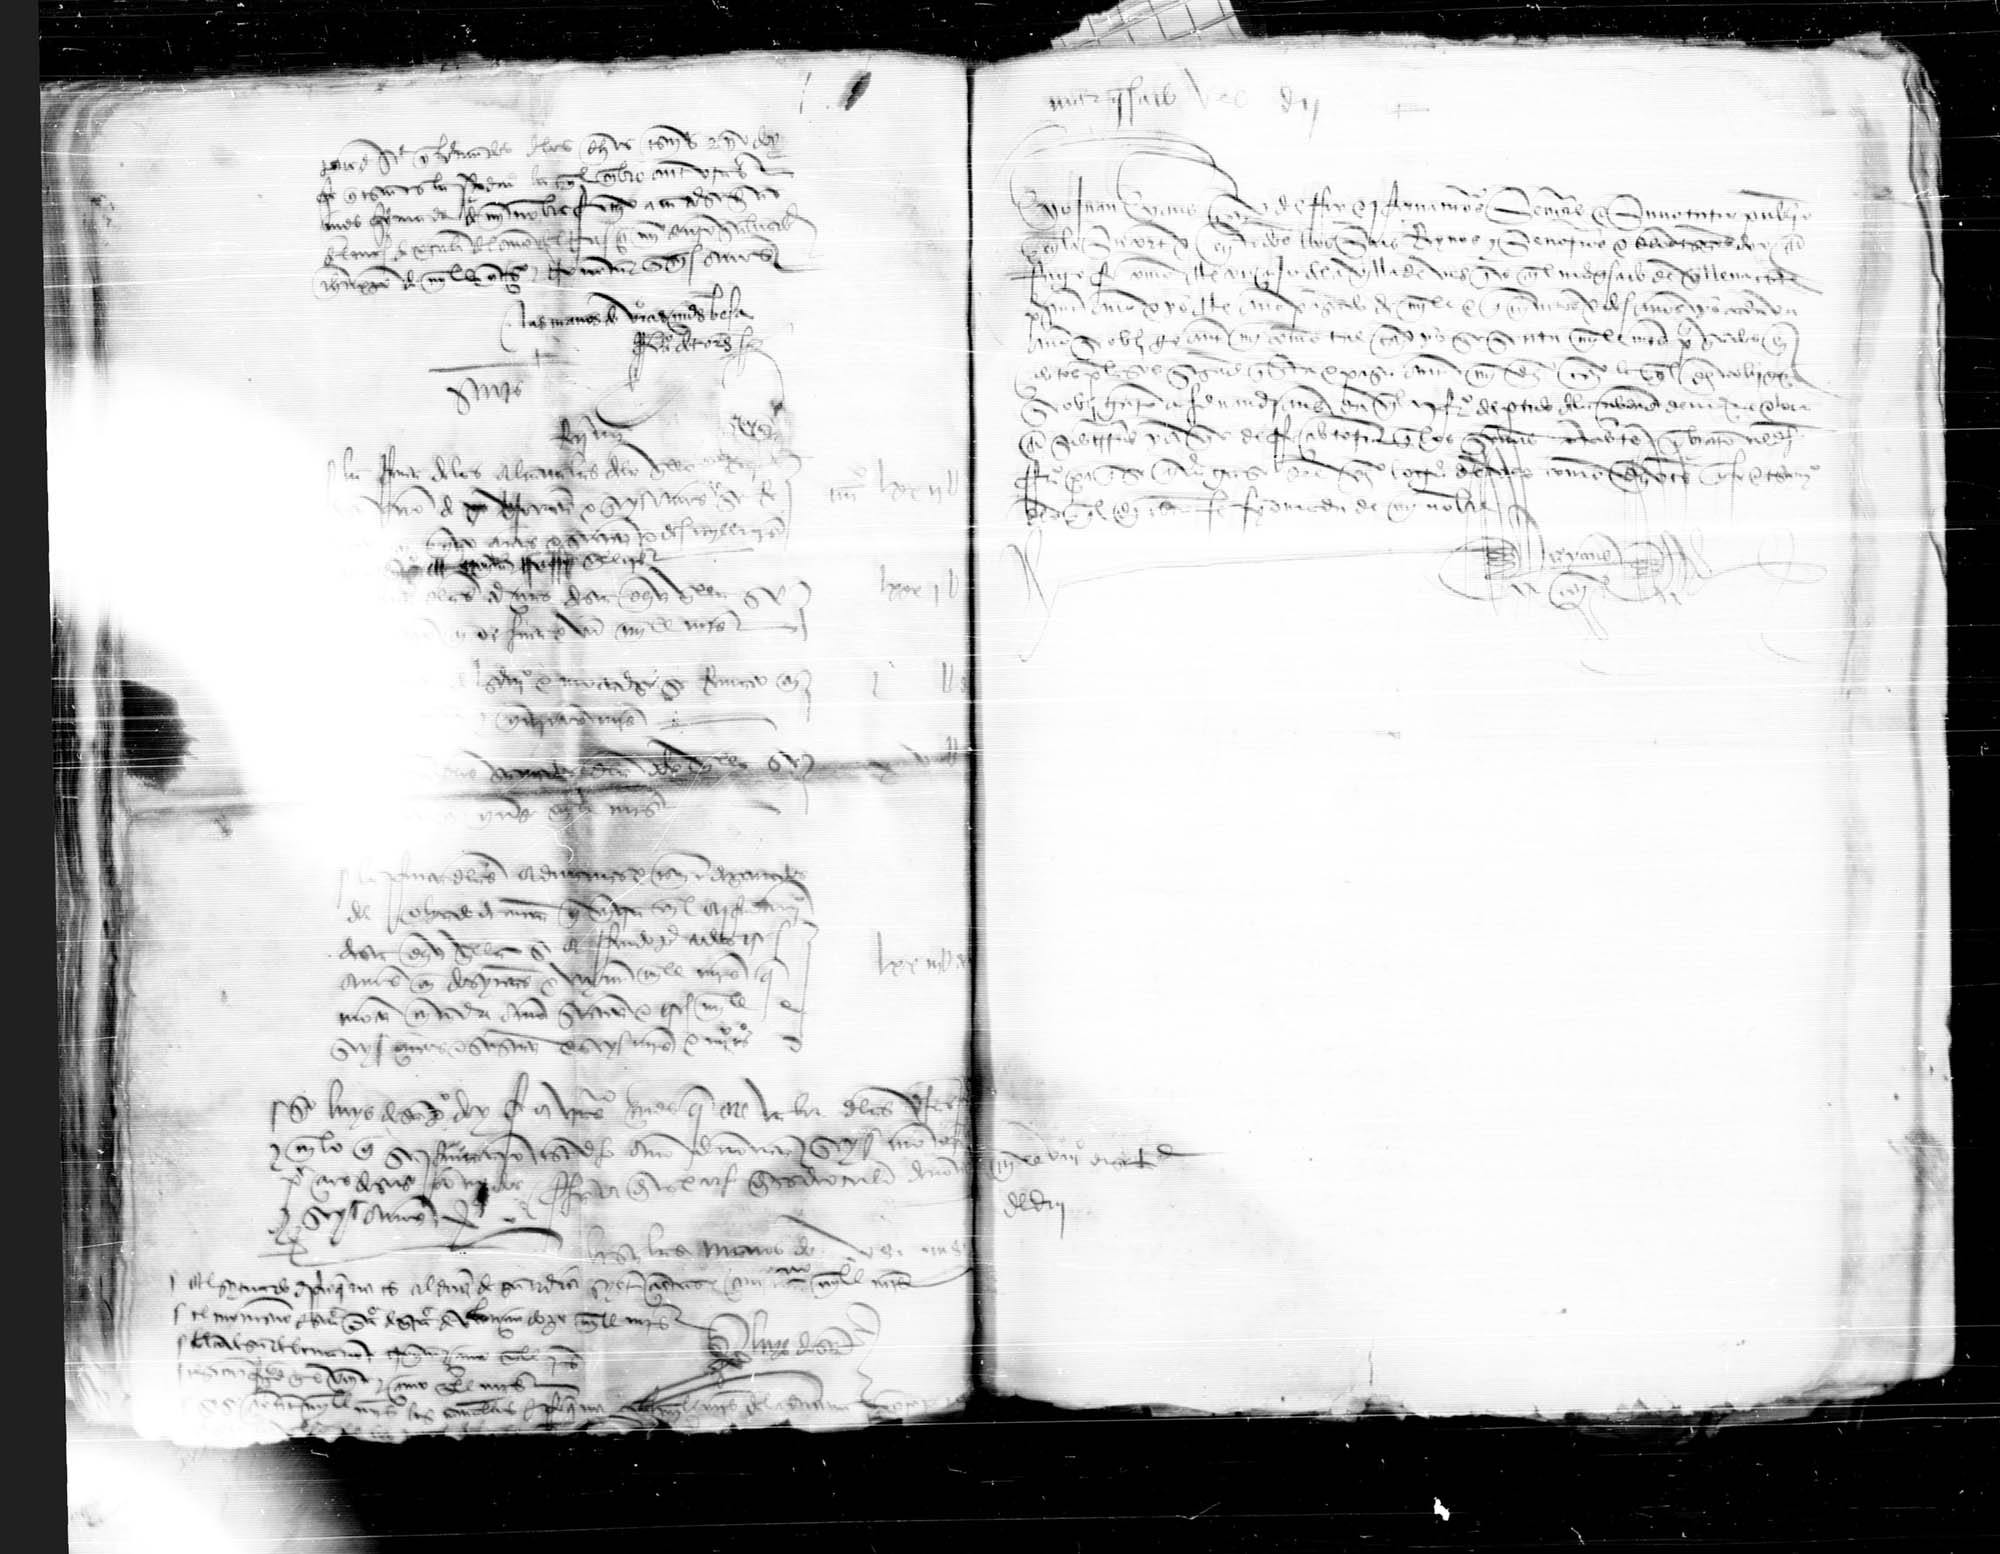 Testimonio notarial librado por Juan Yáñez, escribano de SS.MM., de la obligación que ante él hizo el concejo de la villa de Ves de cierta cantidad a favor de Fernán Yáñez Dávila, arrendador del partido de Murcia y Lorca, durante los años 1502 y 1503.